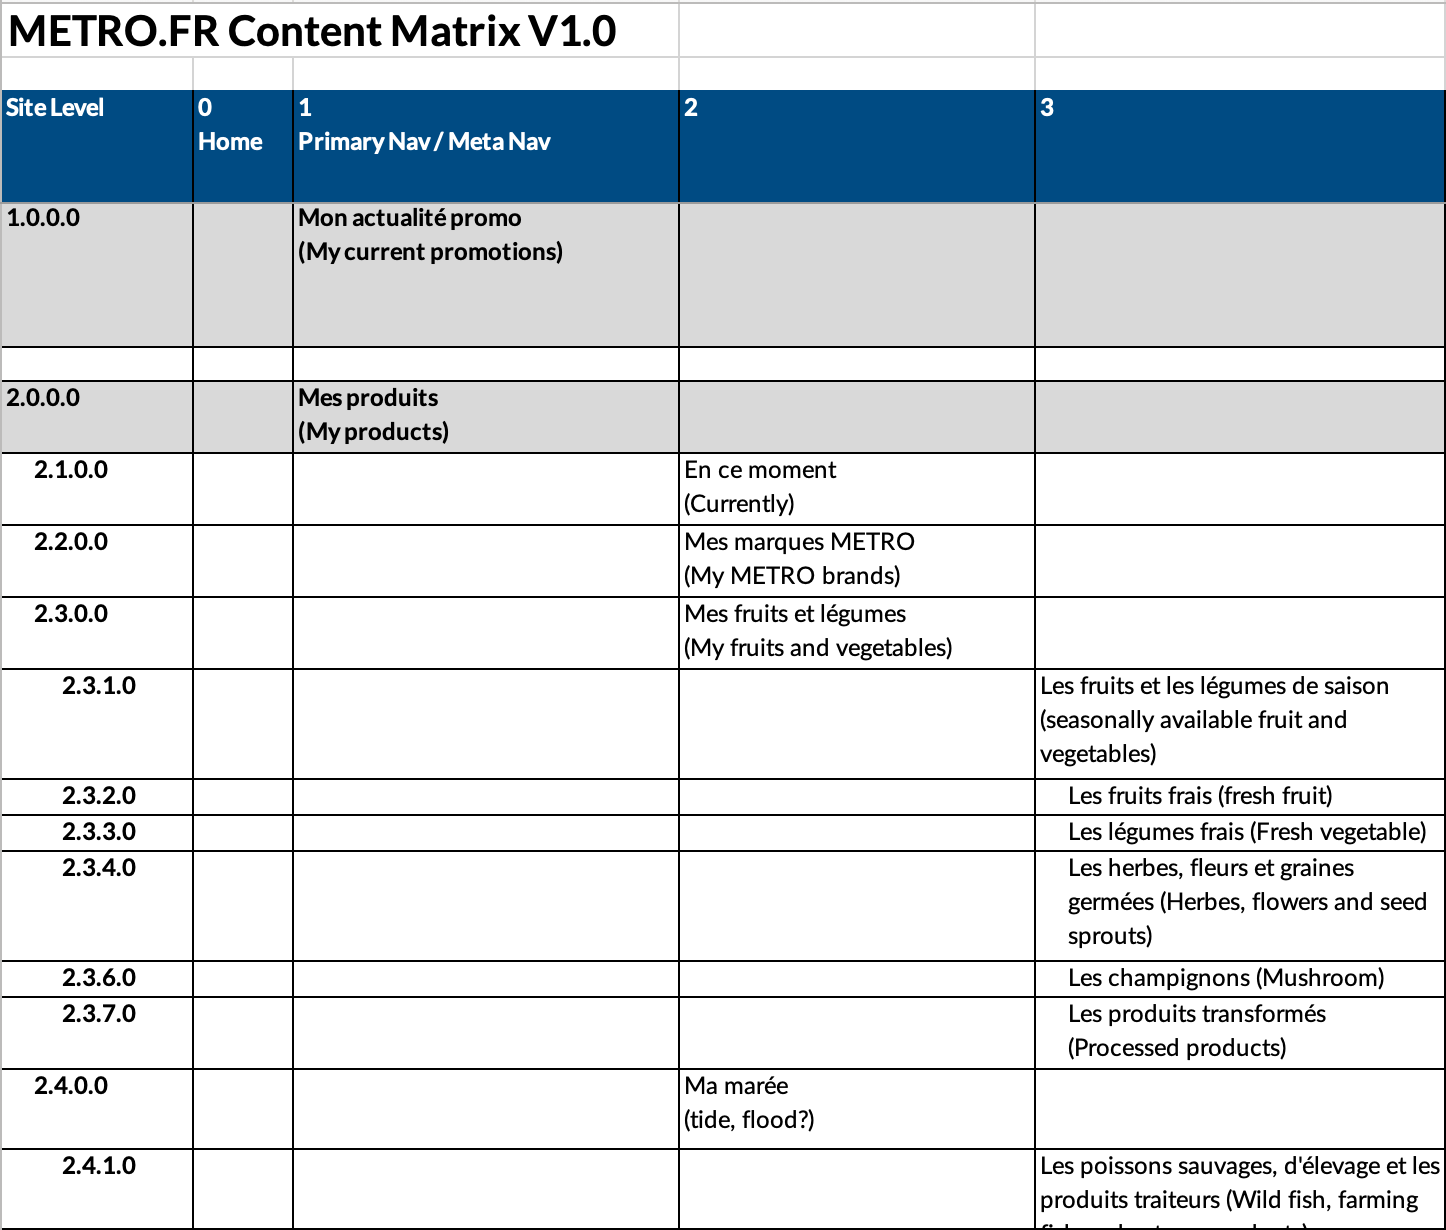 Content matrix for Metro.fr